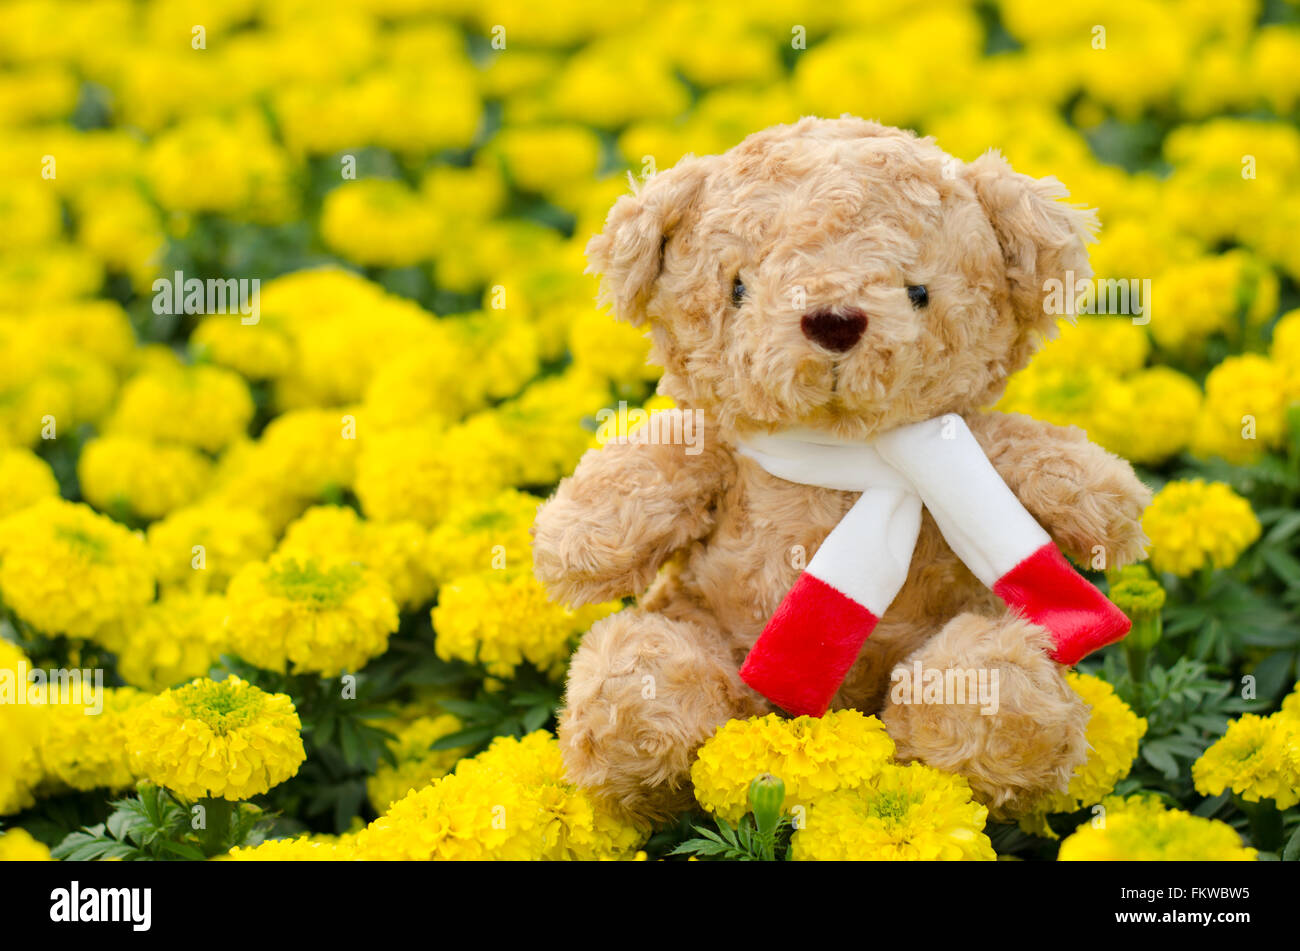 Teddy bear in flower garden Stock Photo